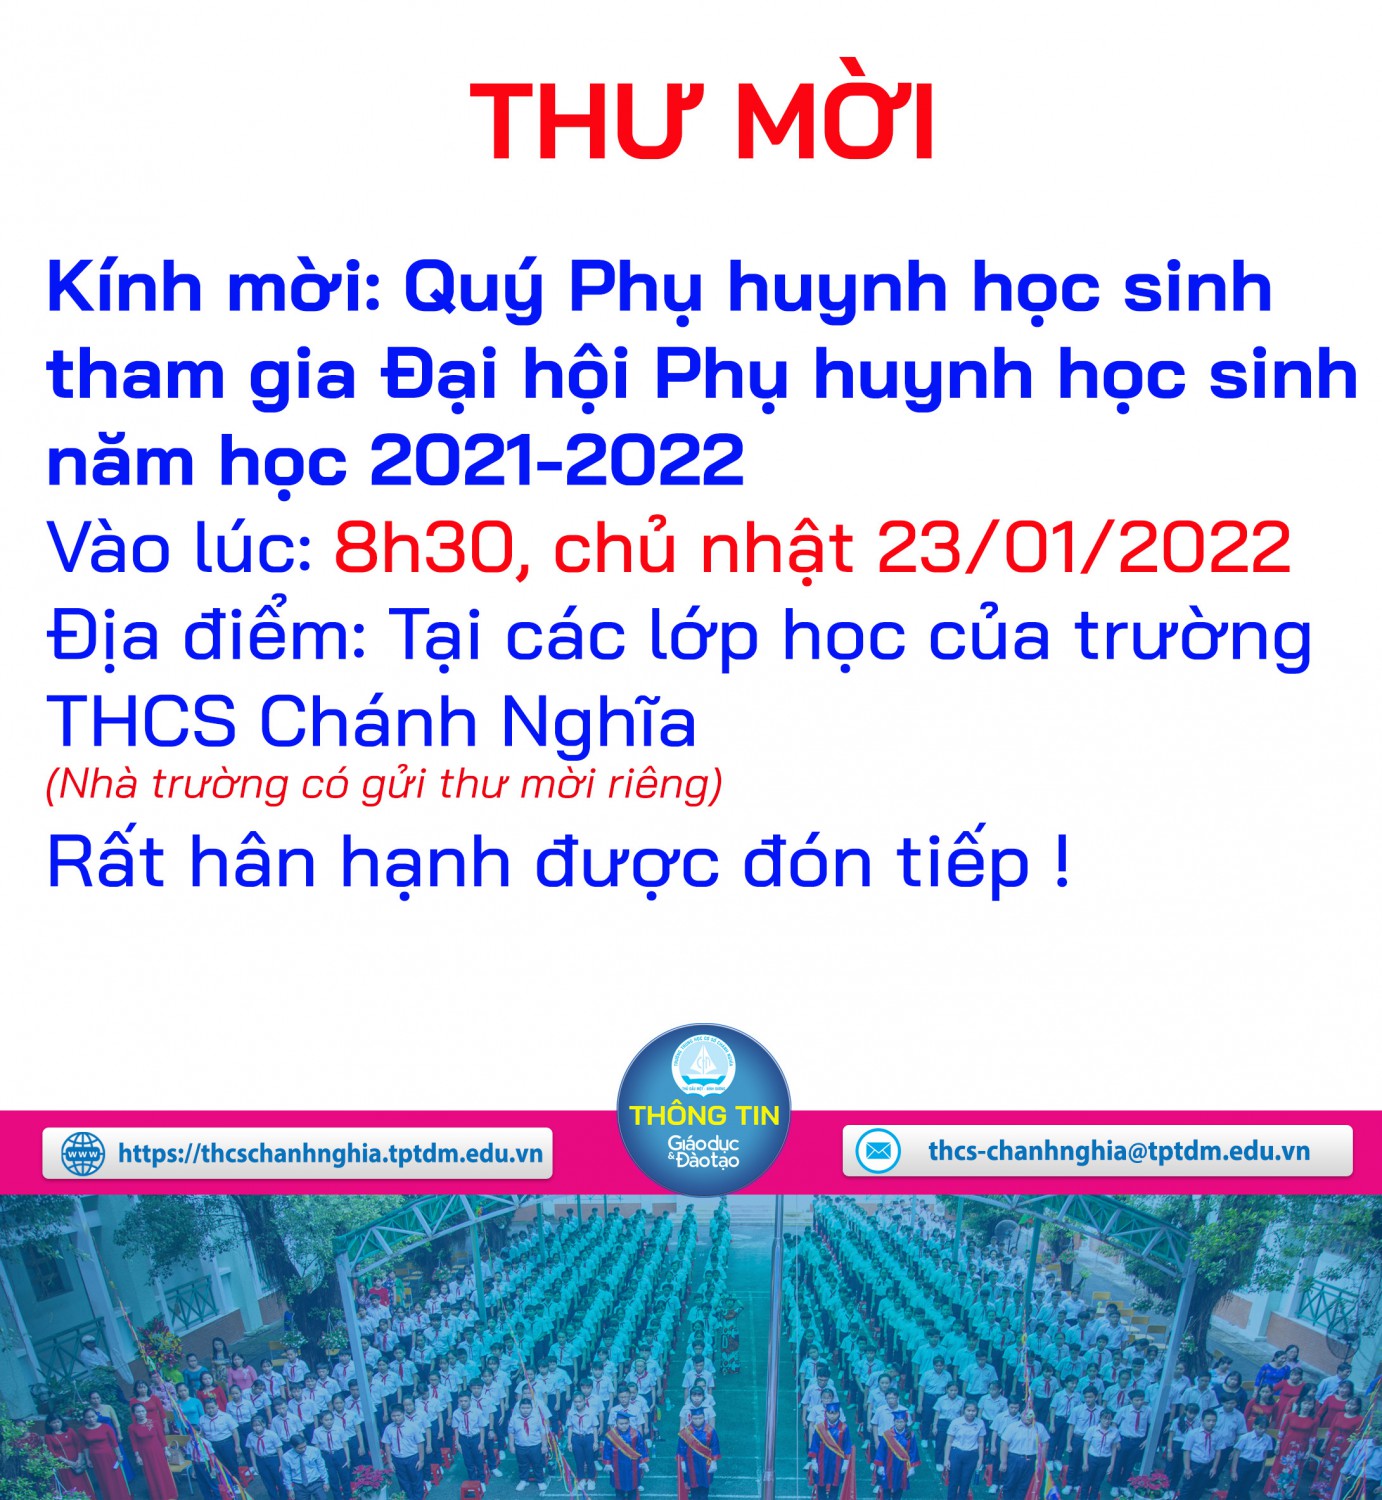 Thư mời Họp phụ huynh học sinh năm học 2021 - 2022